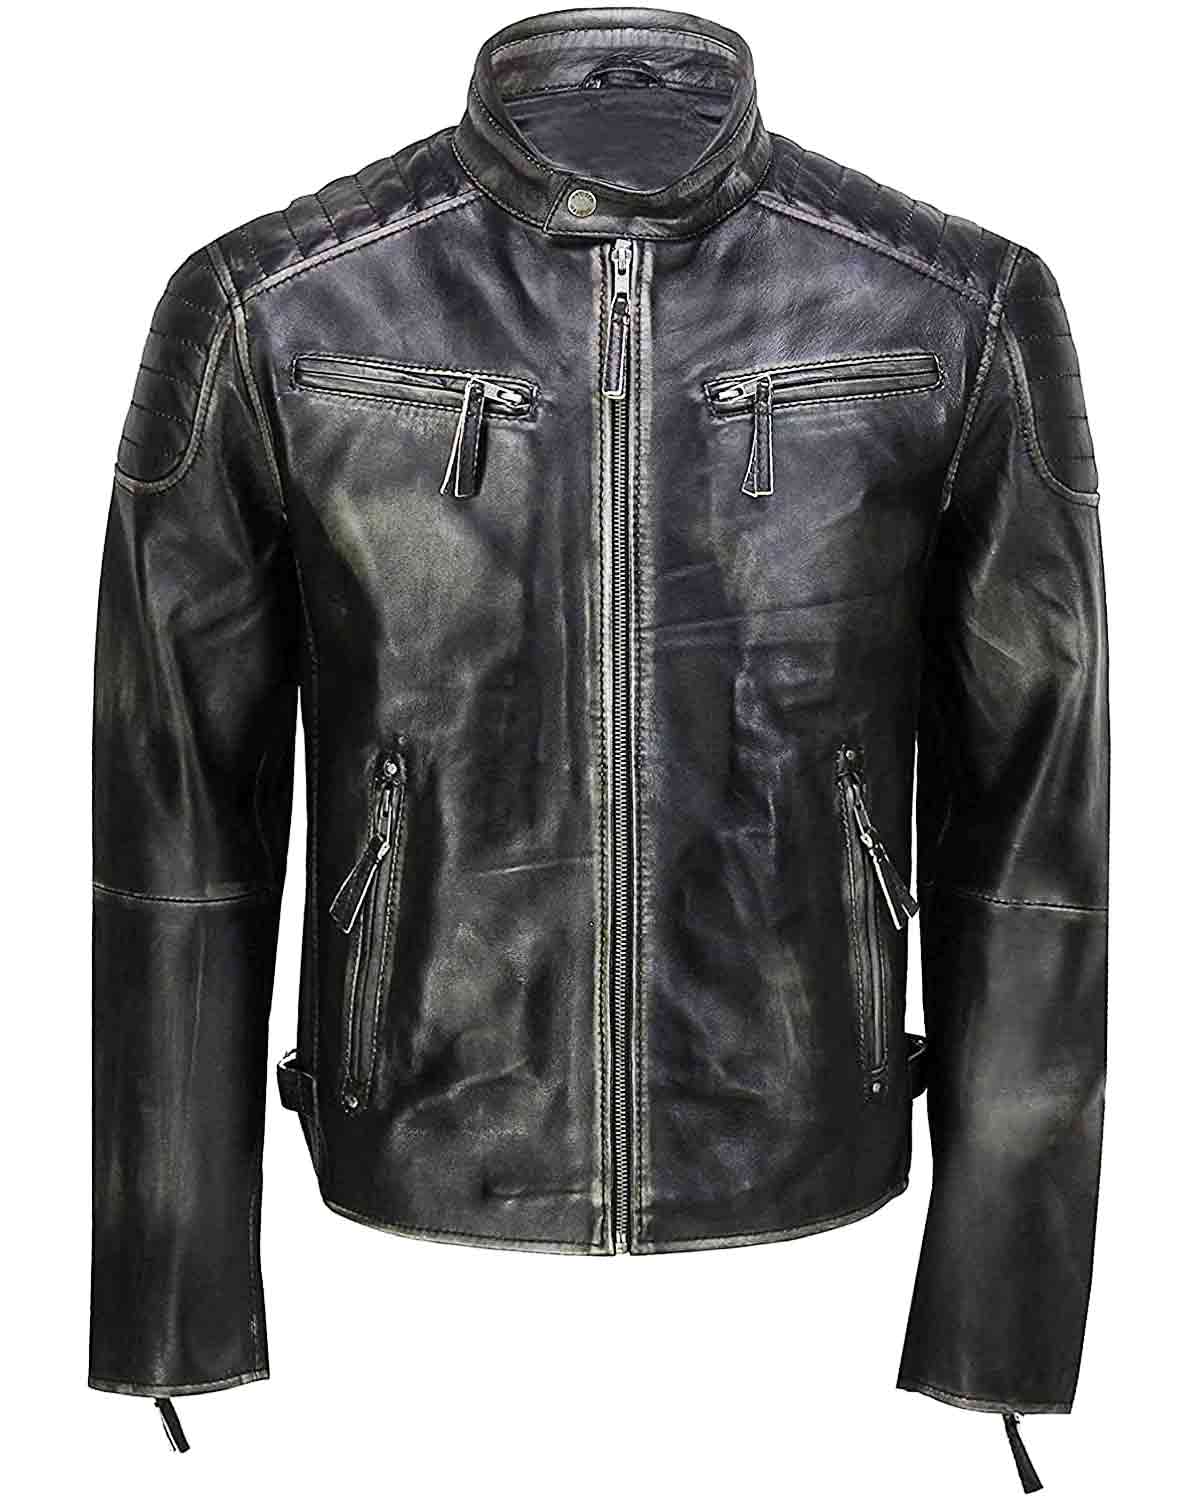 Elite Men's Black Distressed Cafe Racer Leather Jacket